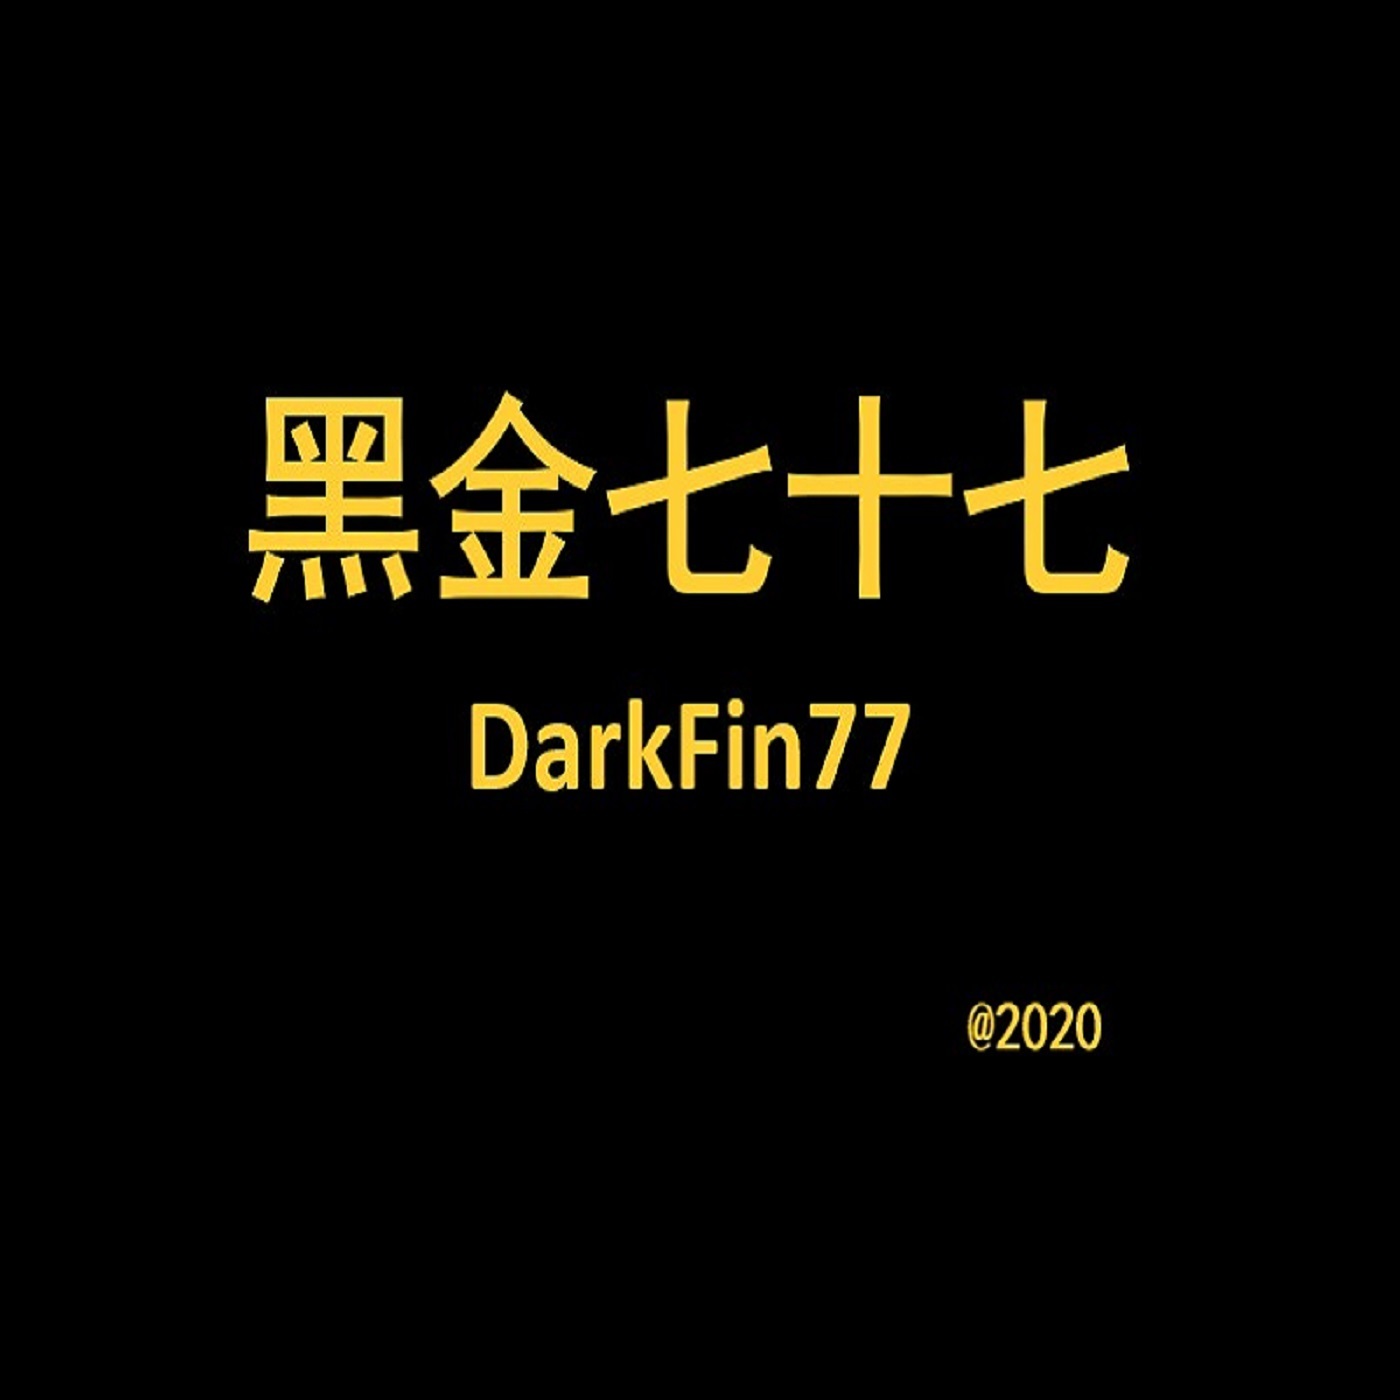 黑金七十七DarkFin77